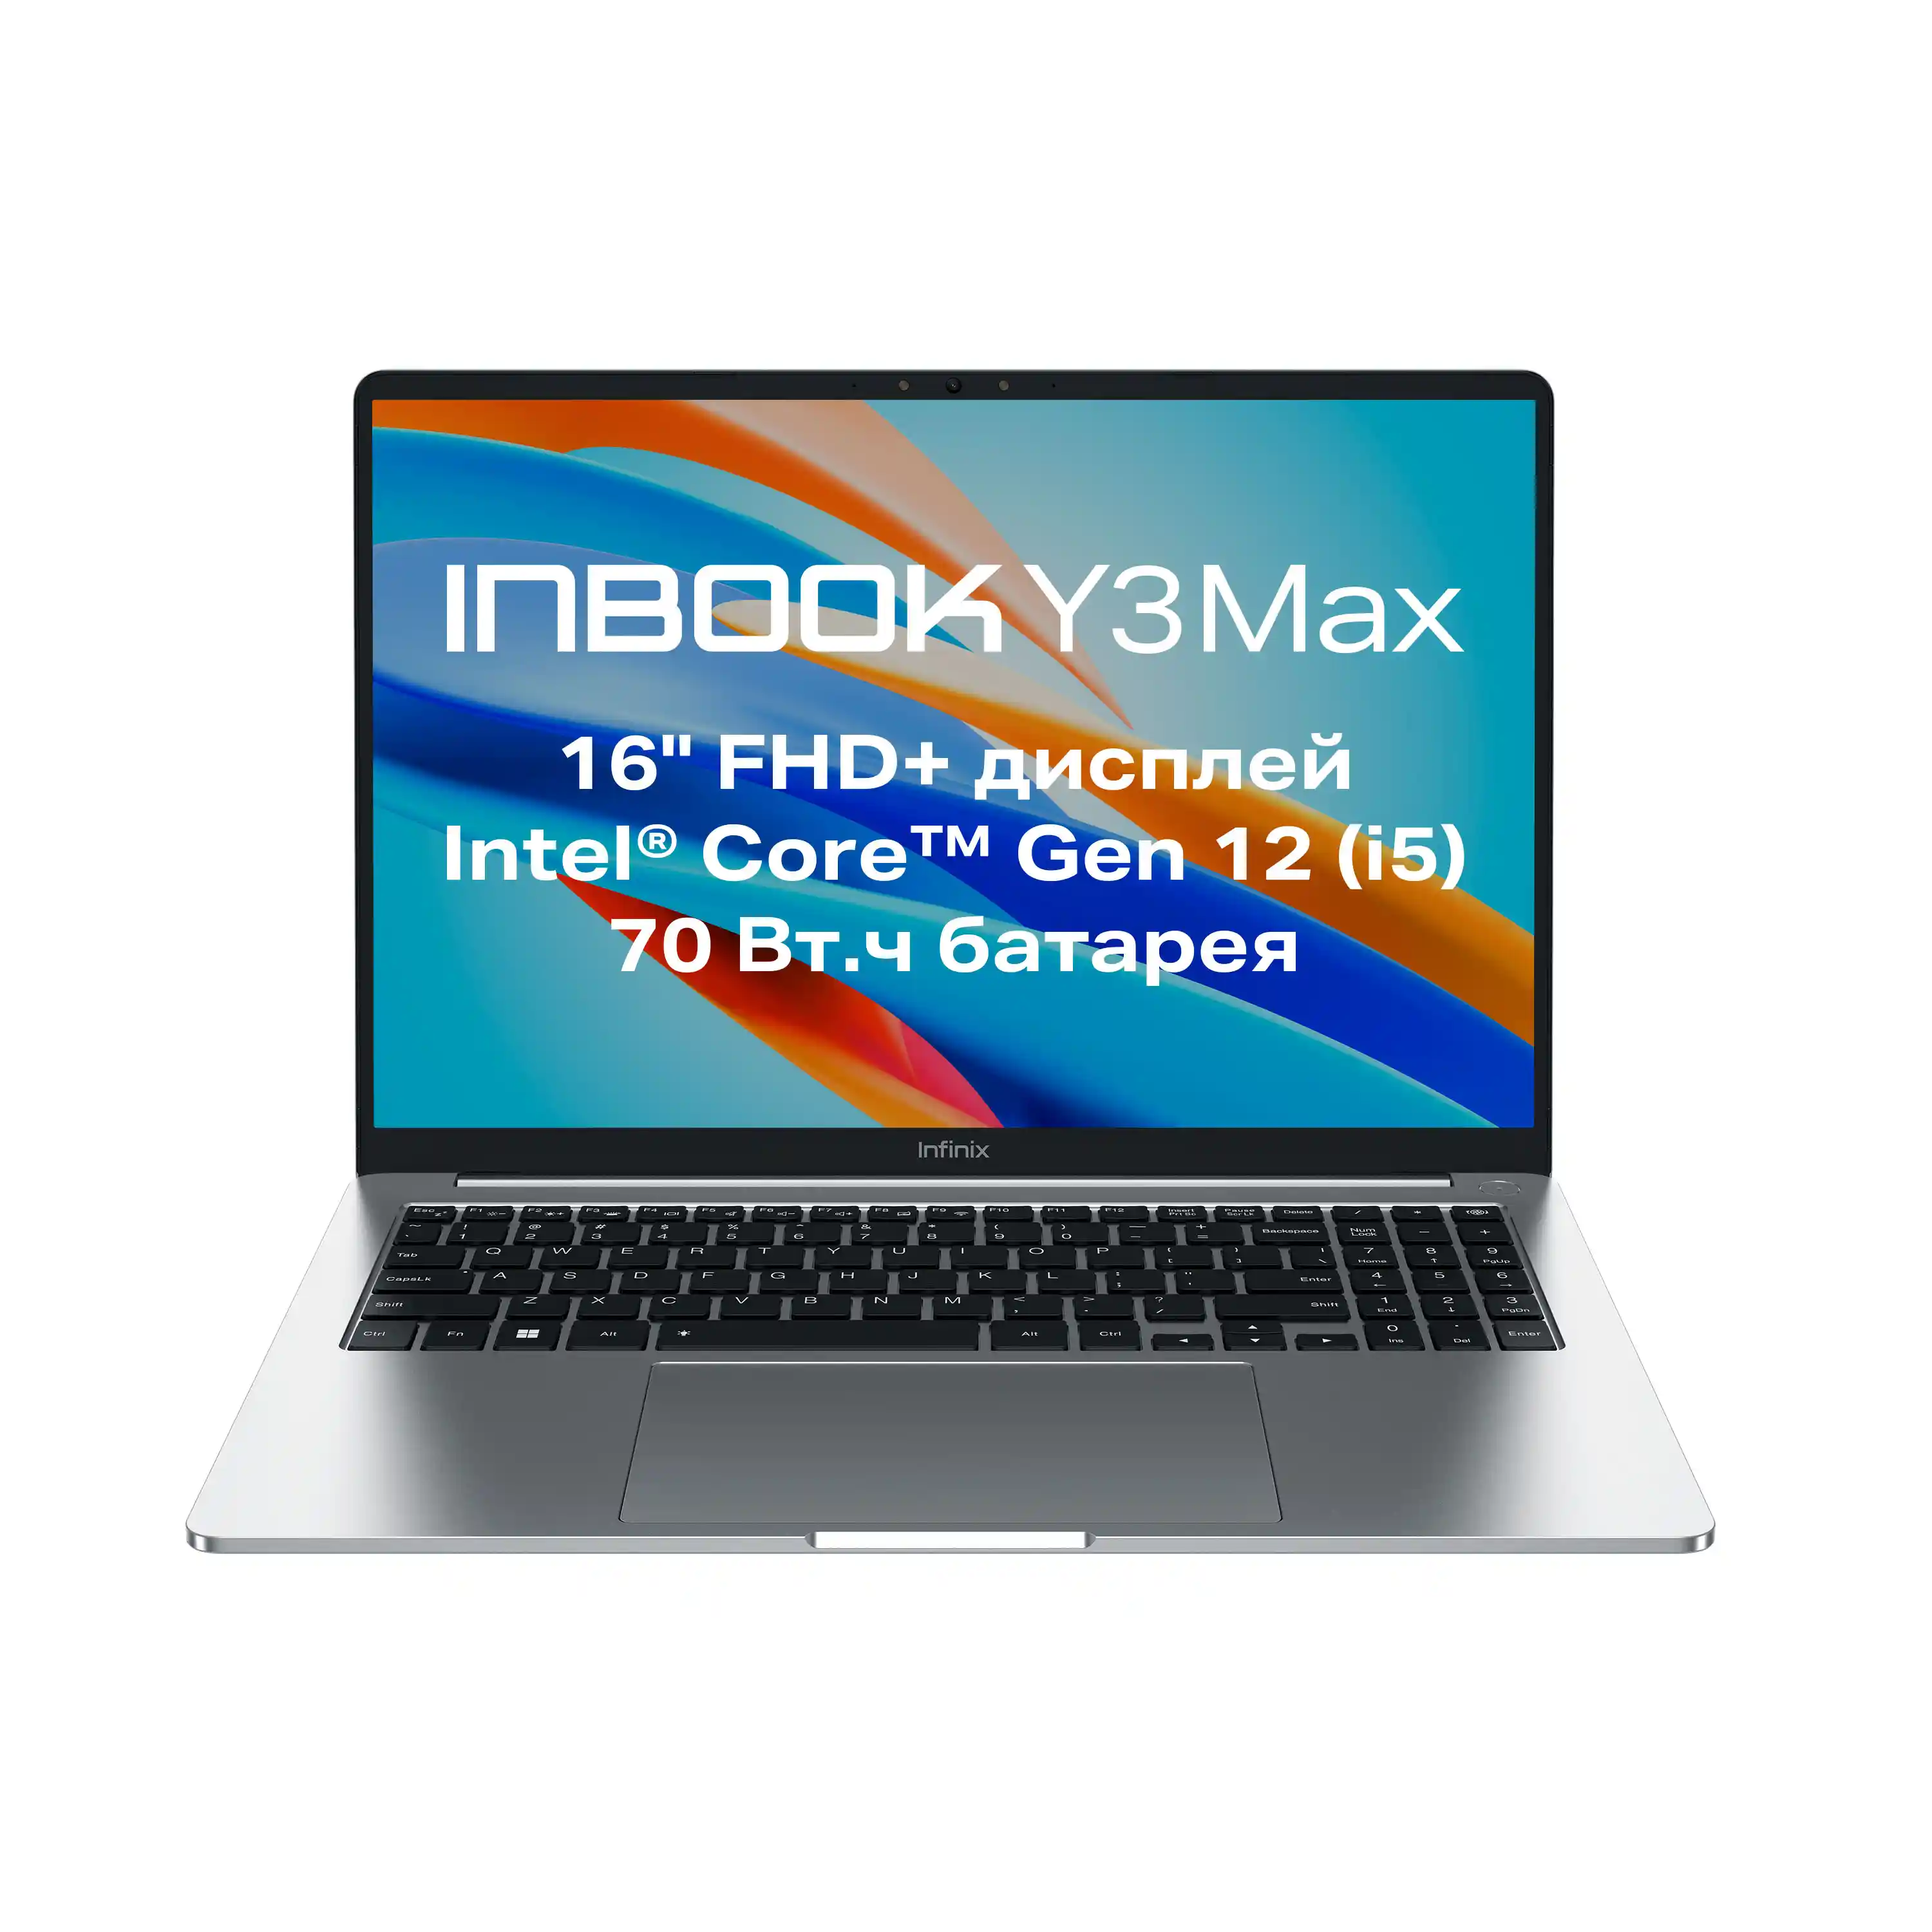 Ноутбук INFINIX Inbook Y3 Max YL613 16" (71008301534)